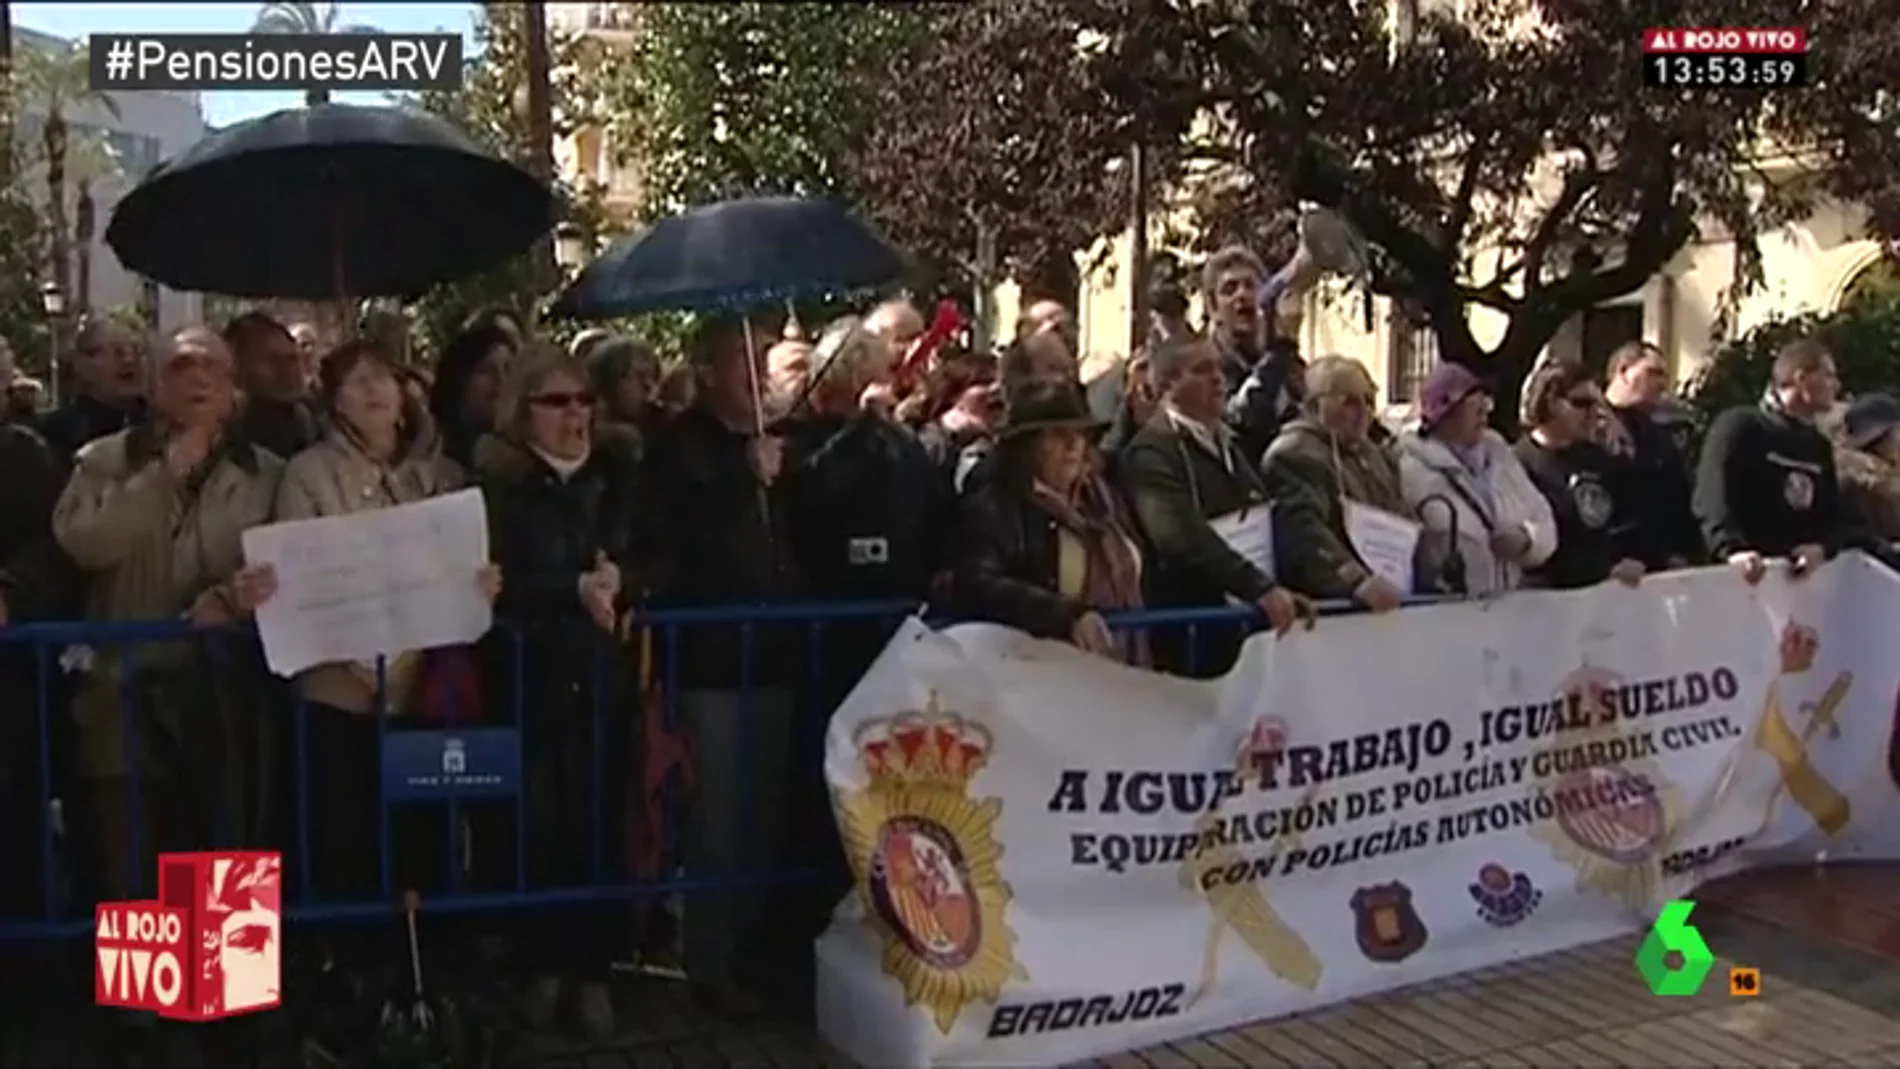 Un grupo de pensionistas abuchea a Mariano Rajoy